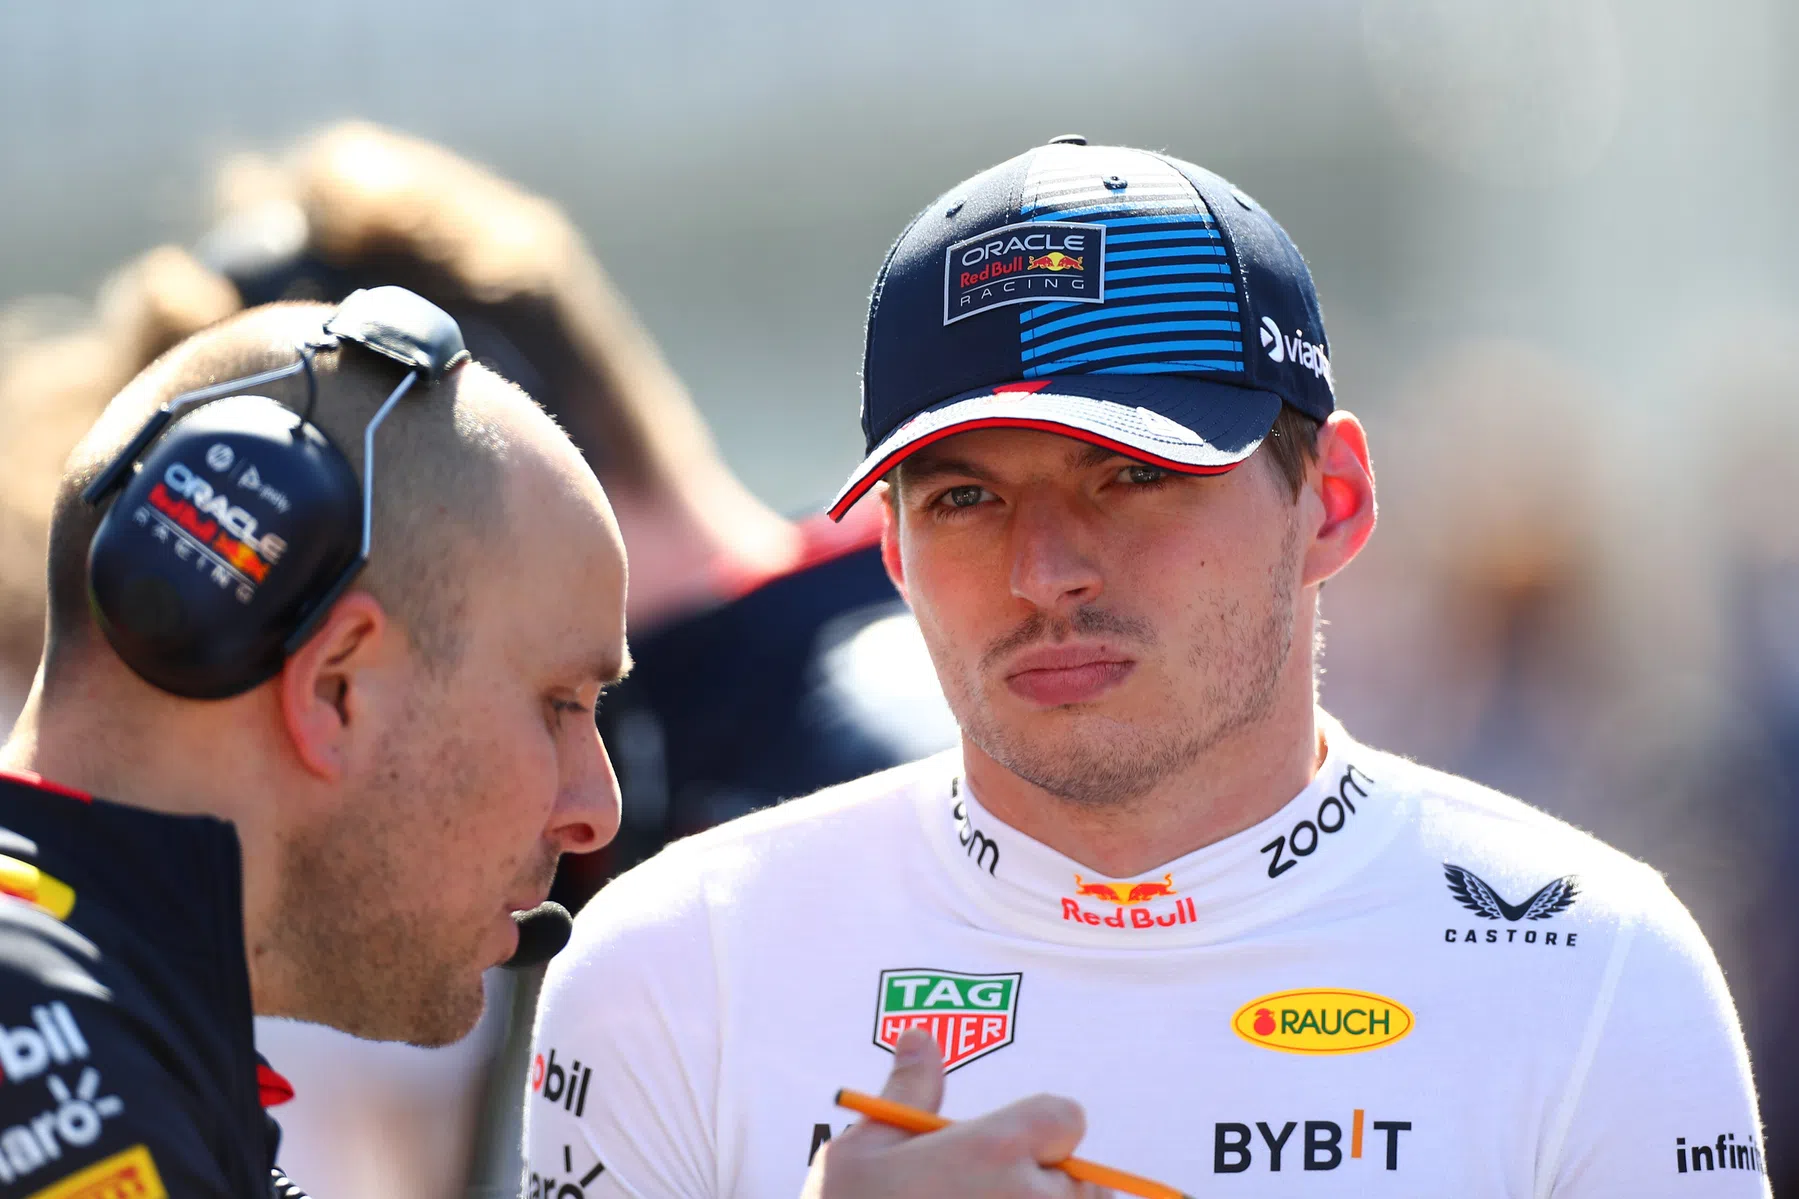 Coluna de Brundle sobre Verstappen após o GP da Austrália